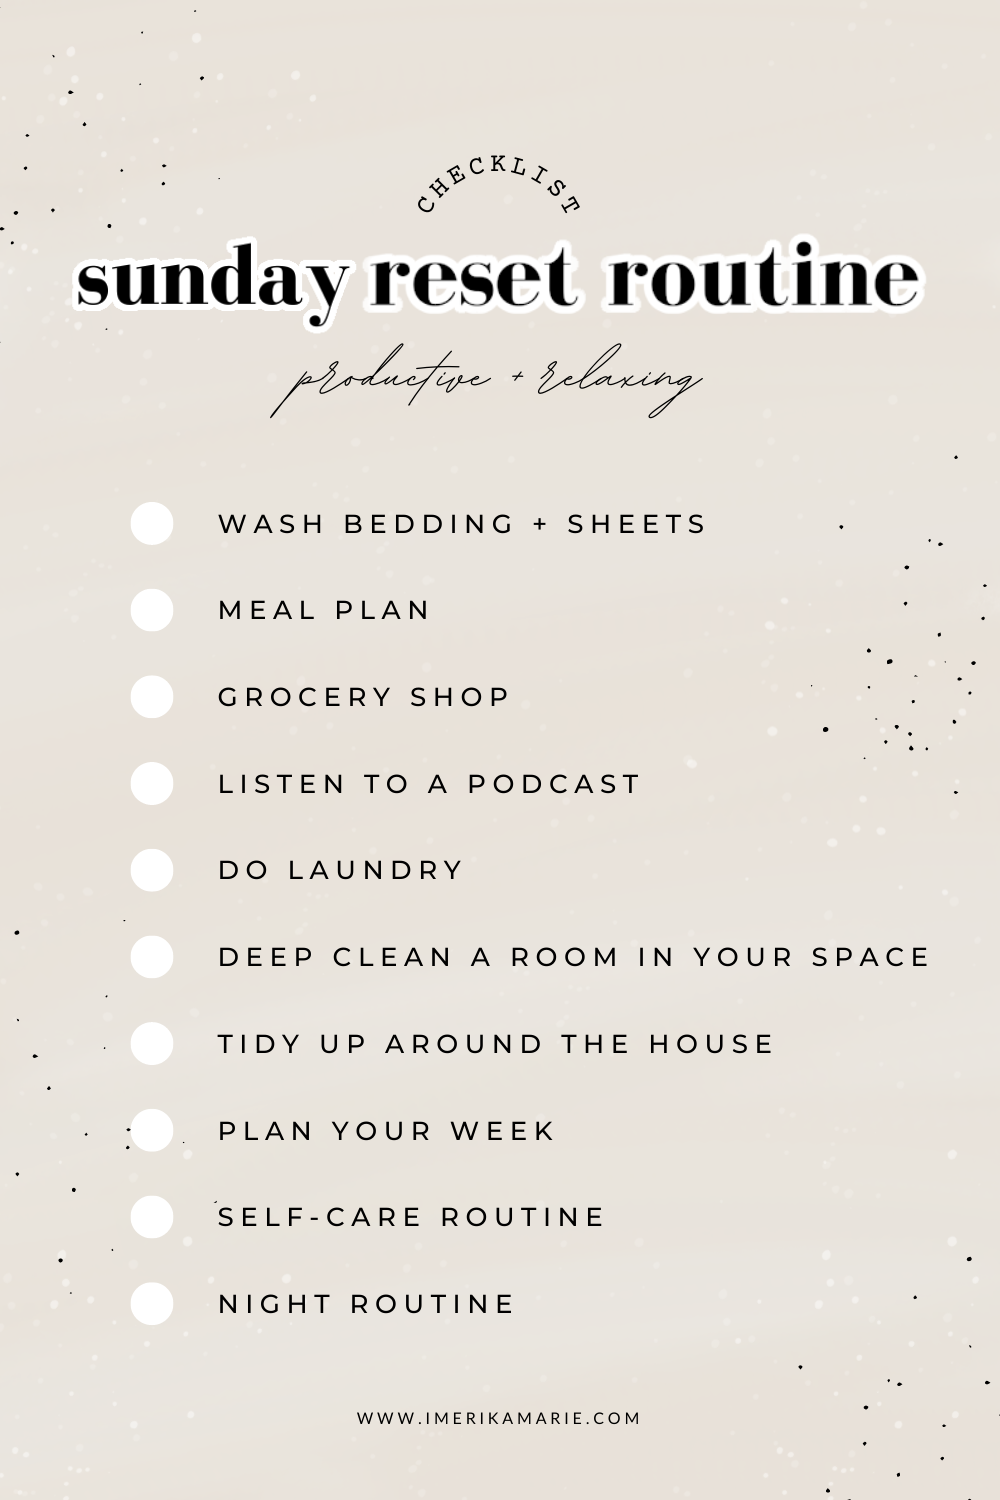 sunday reset routine checklist